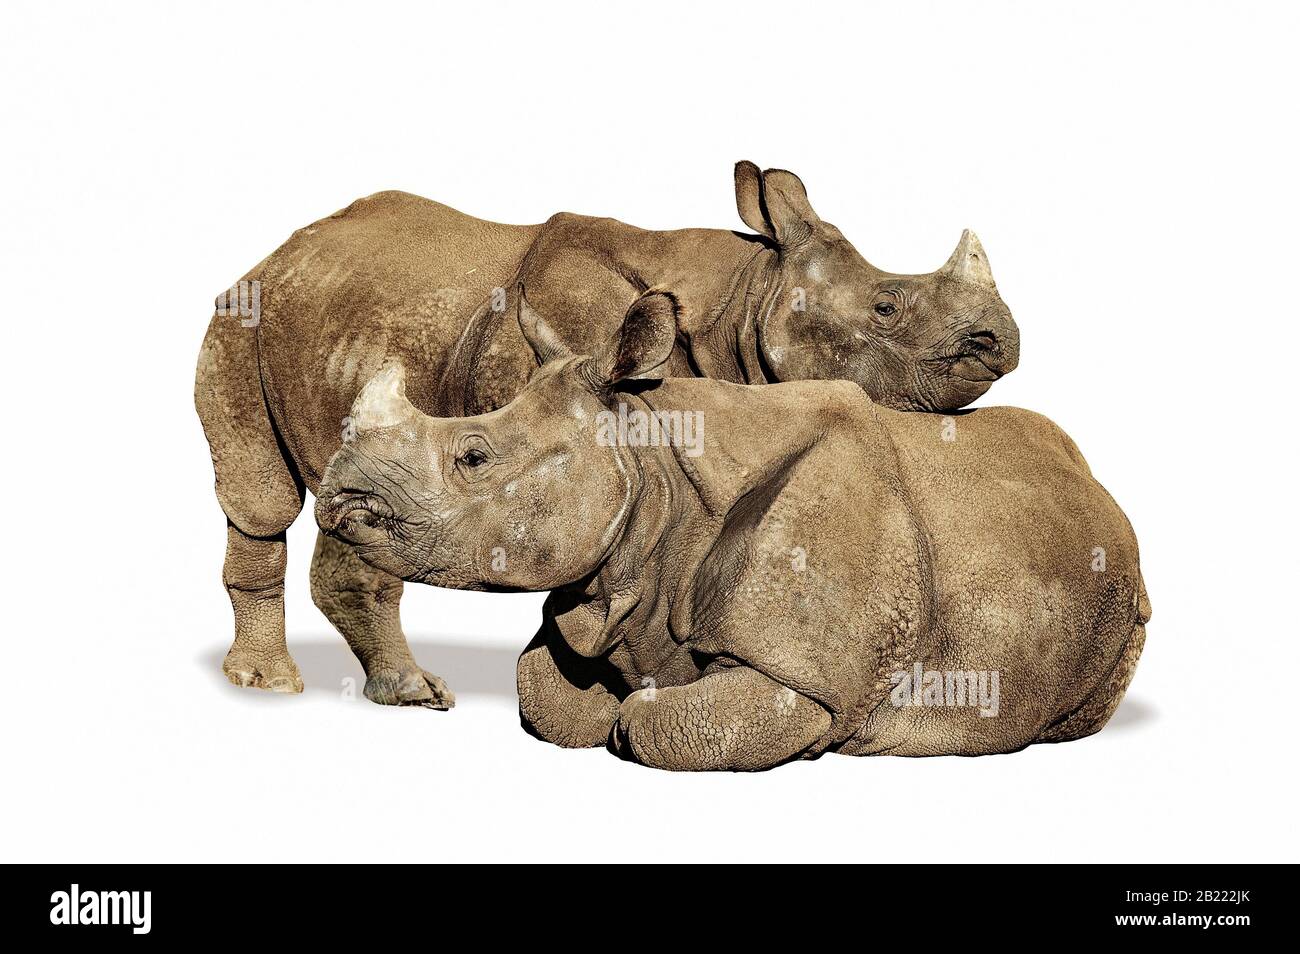 Deux rhinocéros indiens, un debout et un assis, isolés sur fond blanc Banque D'Images